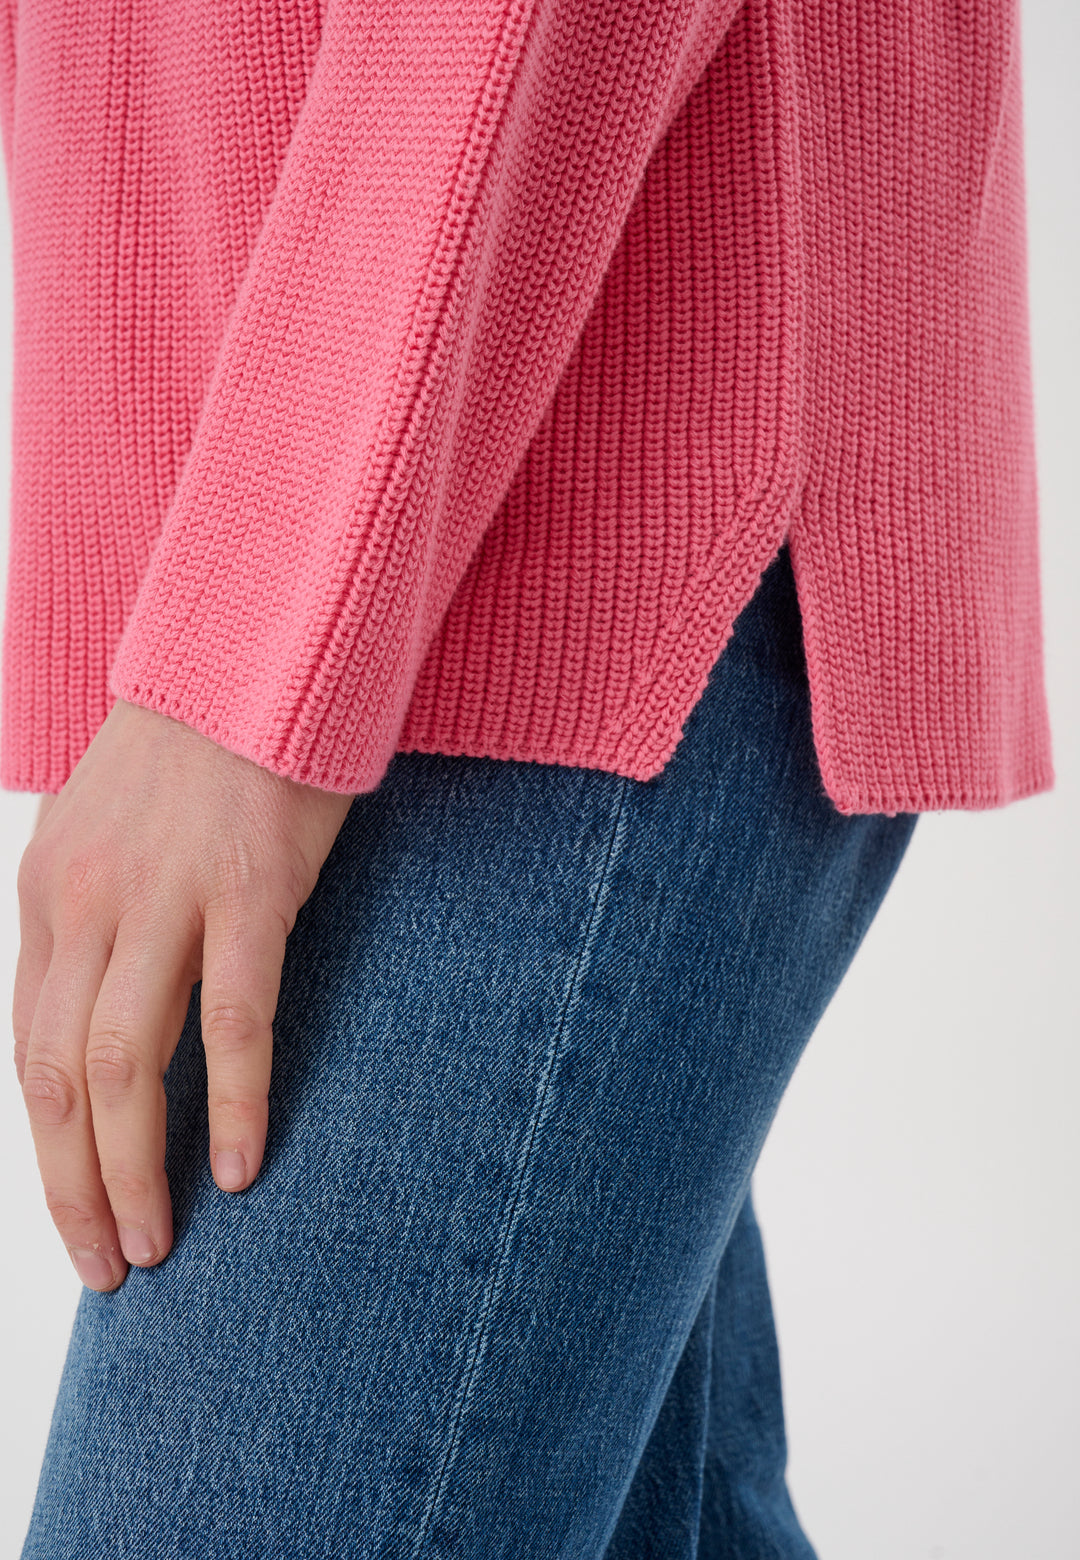 Lind Malene Knit Pullover 6400 Sorbet Pink